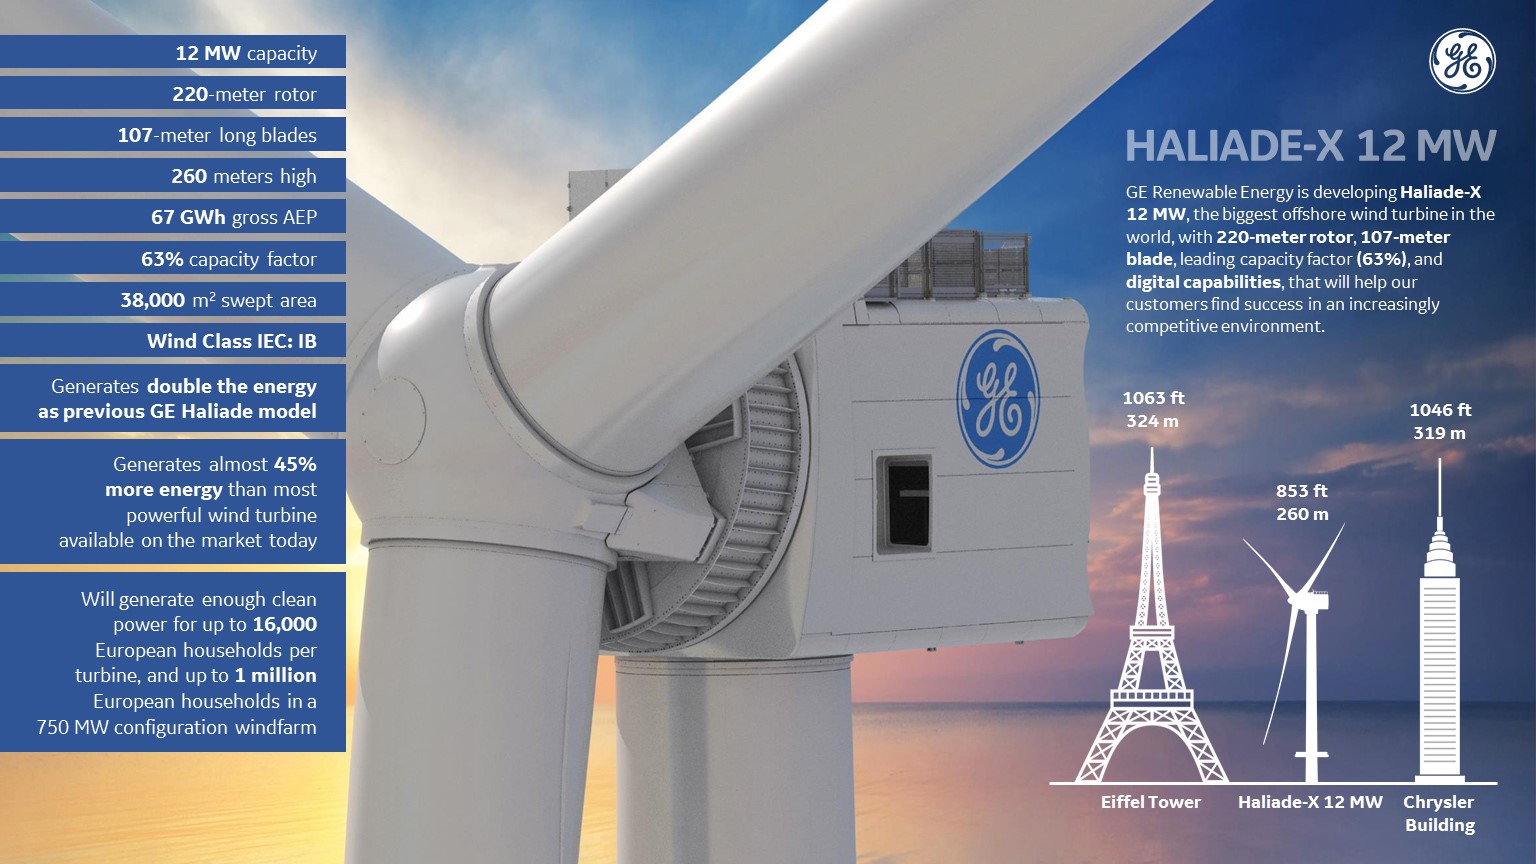 General Electric gradi vjetrenjaču visoku 260 metara, bit će najveća na  svijetu - Energetika @ Bug.hr